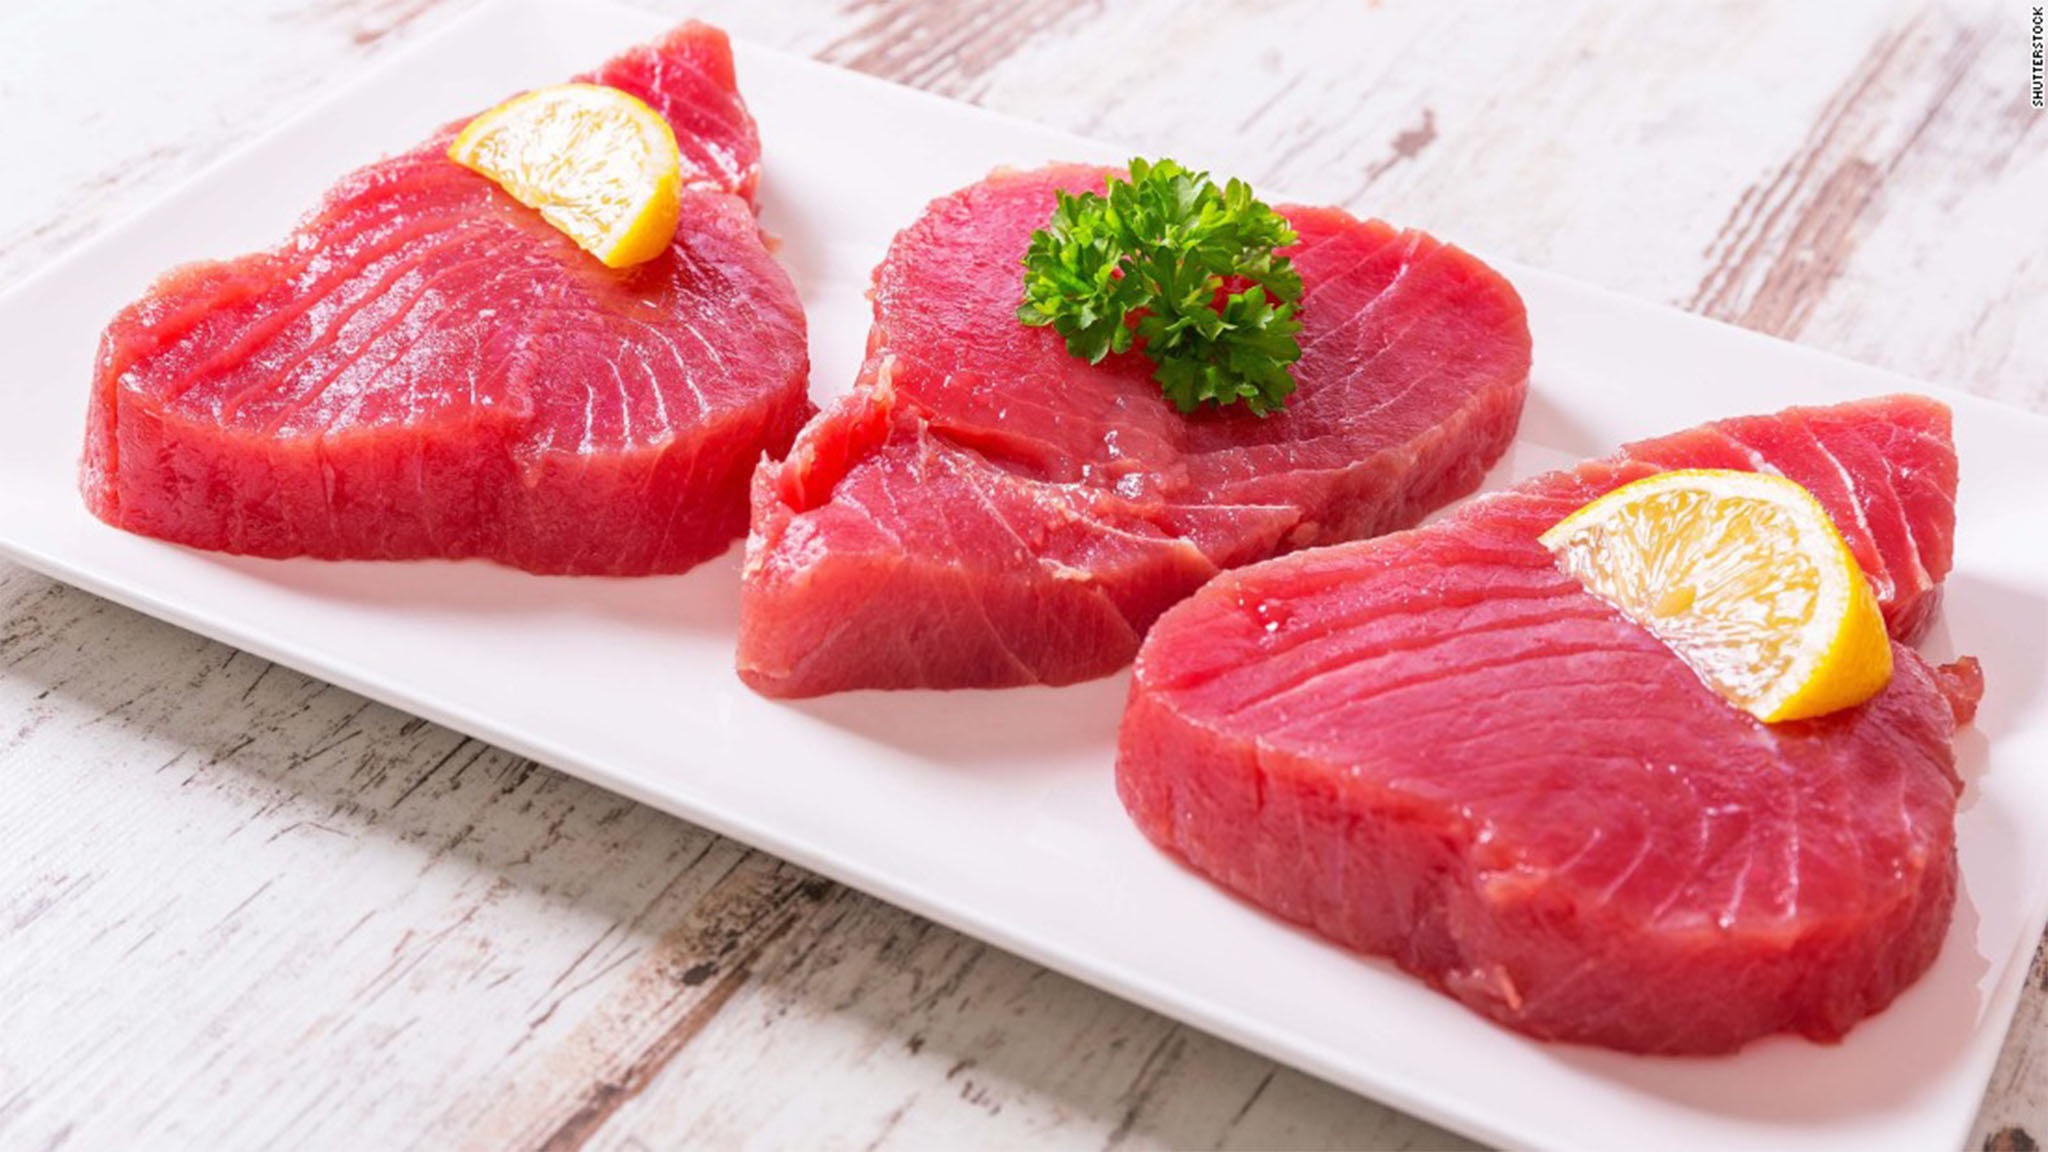 Cá ngừ là một trong những loại thực phẩm giàu vitamin B12